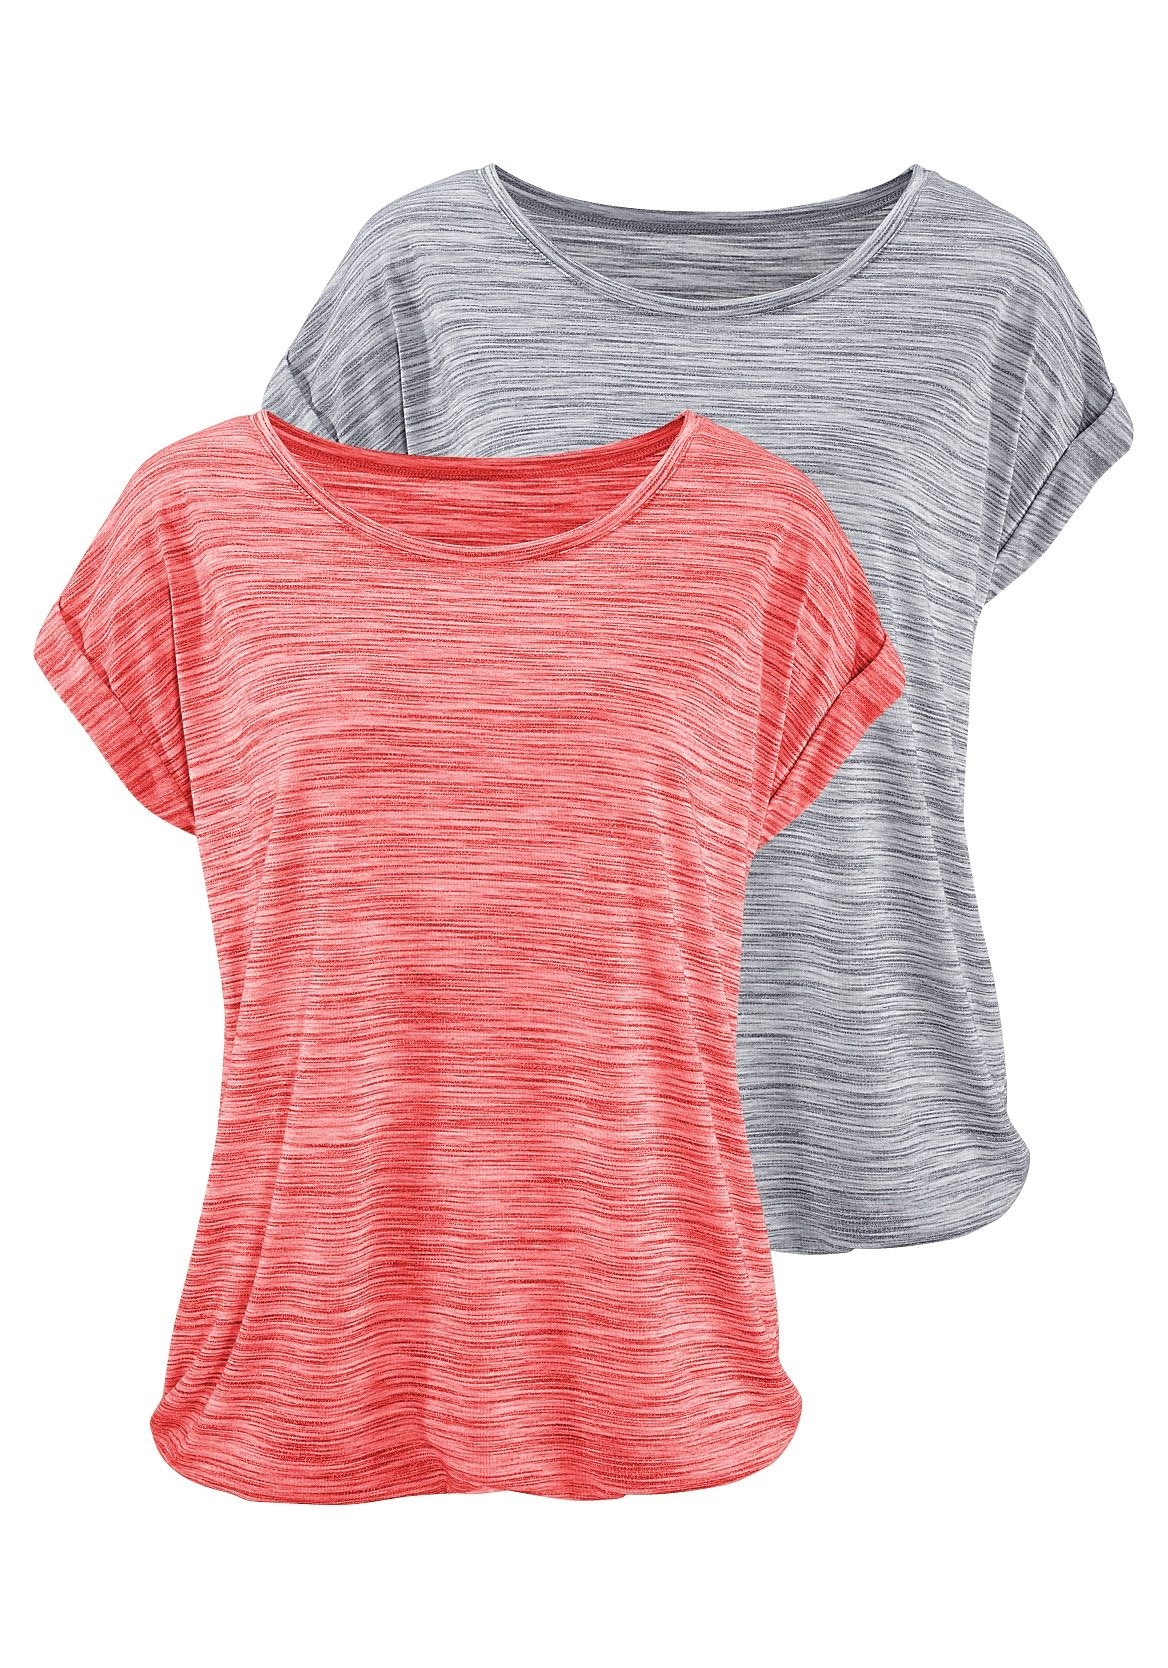 ♕ Beachtime versandkostenfrei (2er-Pack), farbigem T-Shirt, bestellen Struktureffekt mit